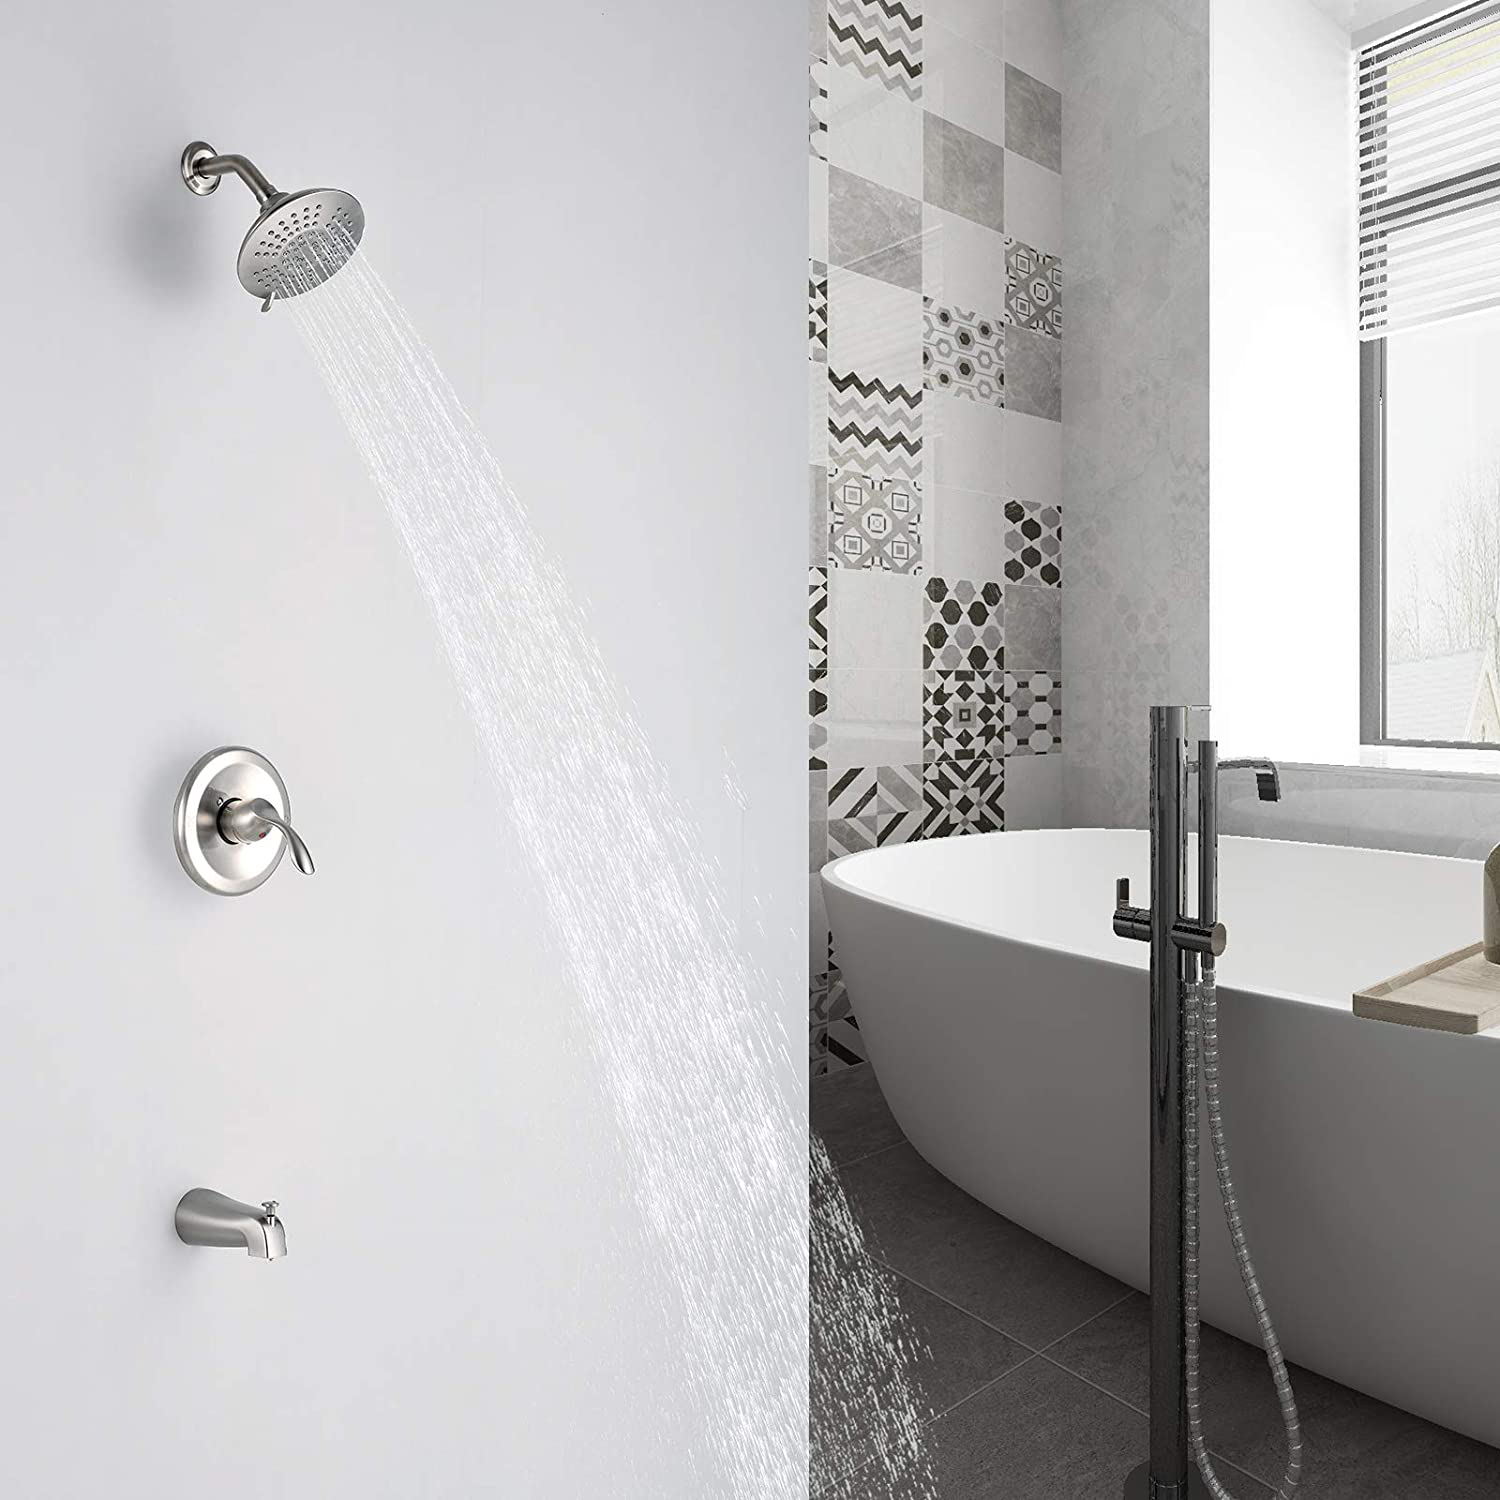 Sistema de chuveiro Aquacubic montado na parede para banheira e torneira de chuveiro com desviador de botão